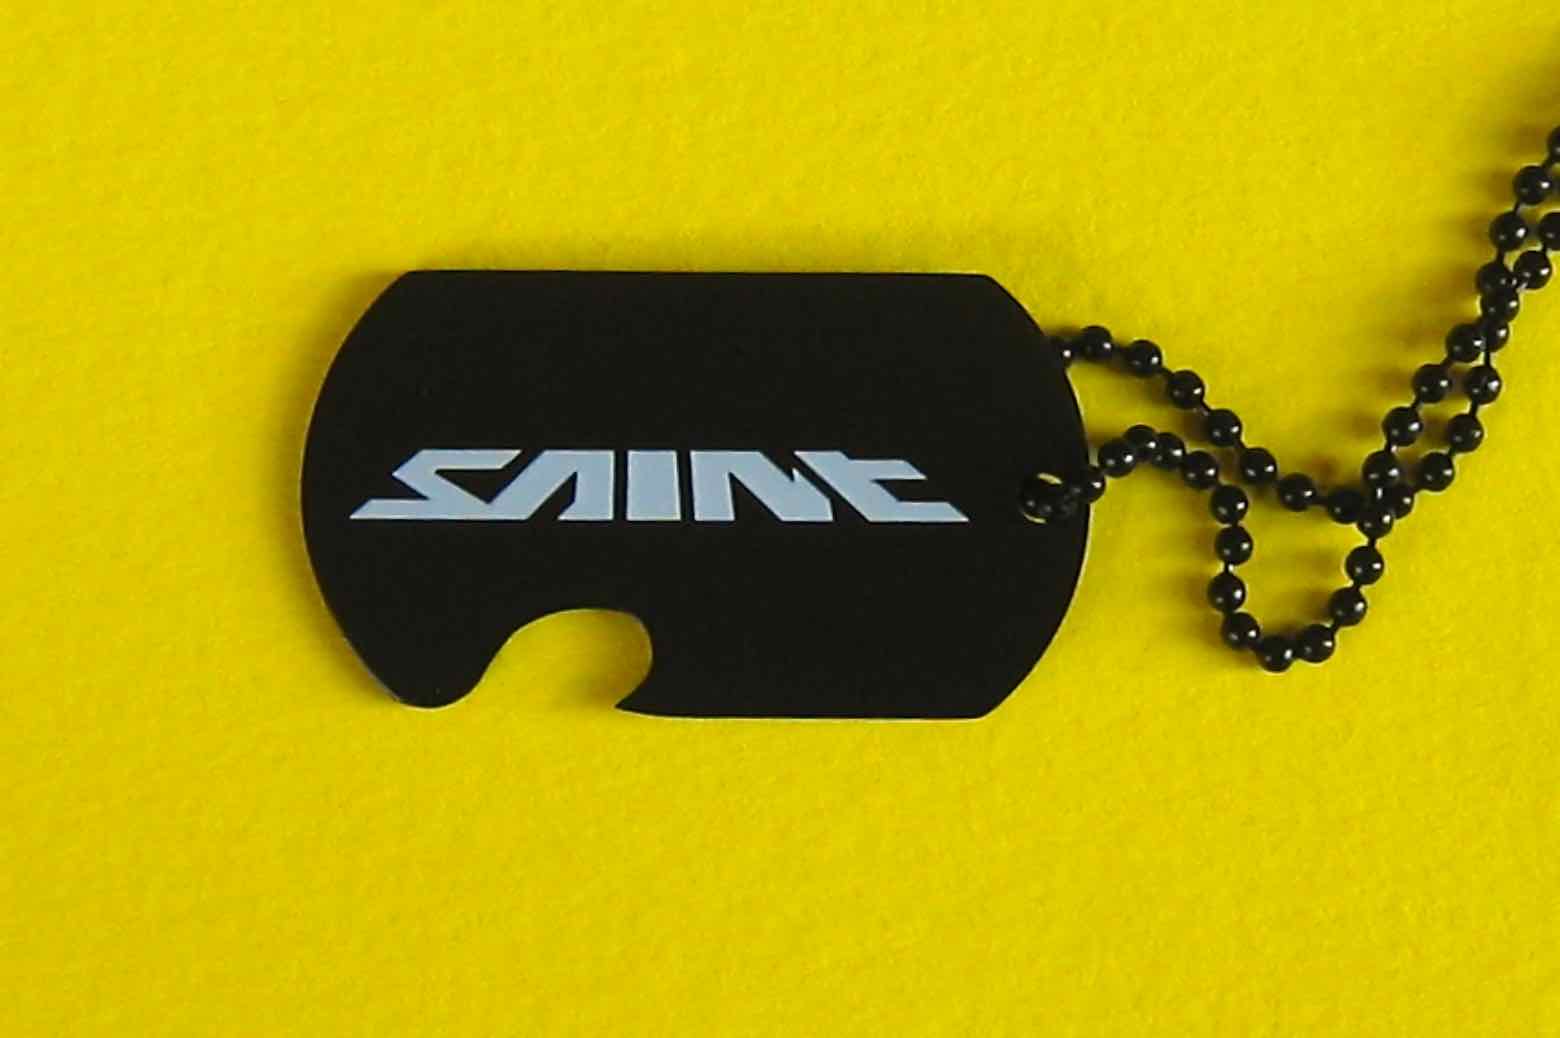 Shimano Saint dog tag - 2008? main image